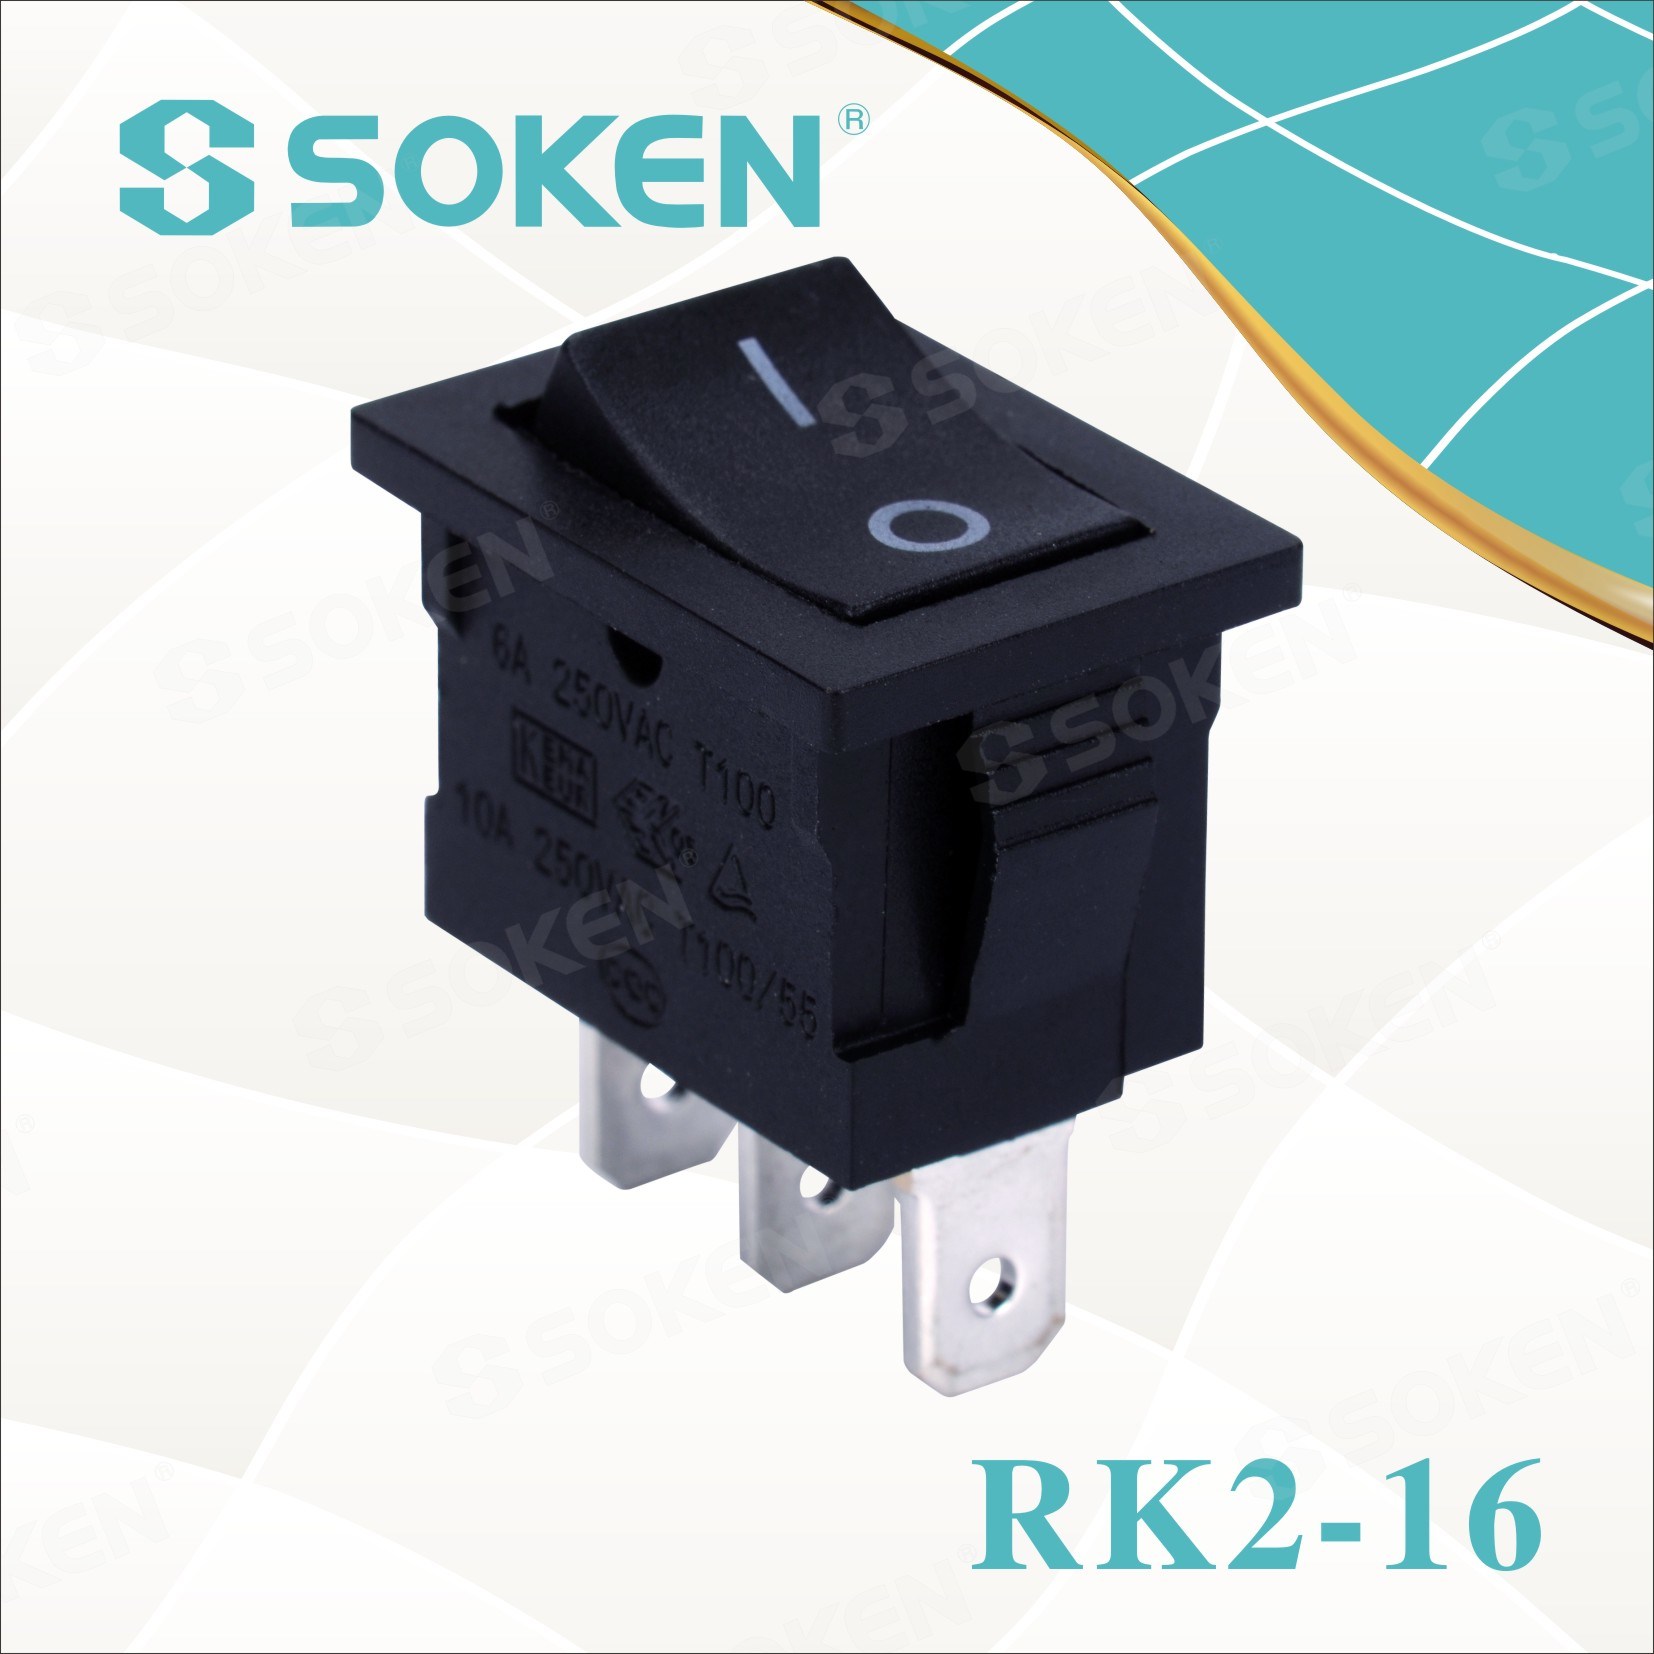 Sokne Rk2-16 1X2 on on Rocker Switch